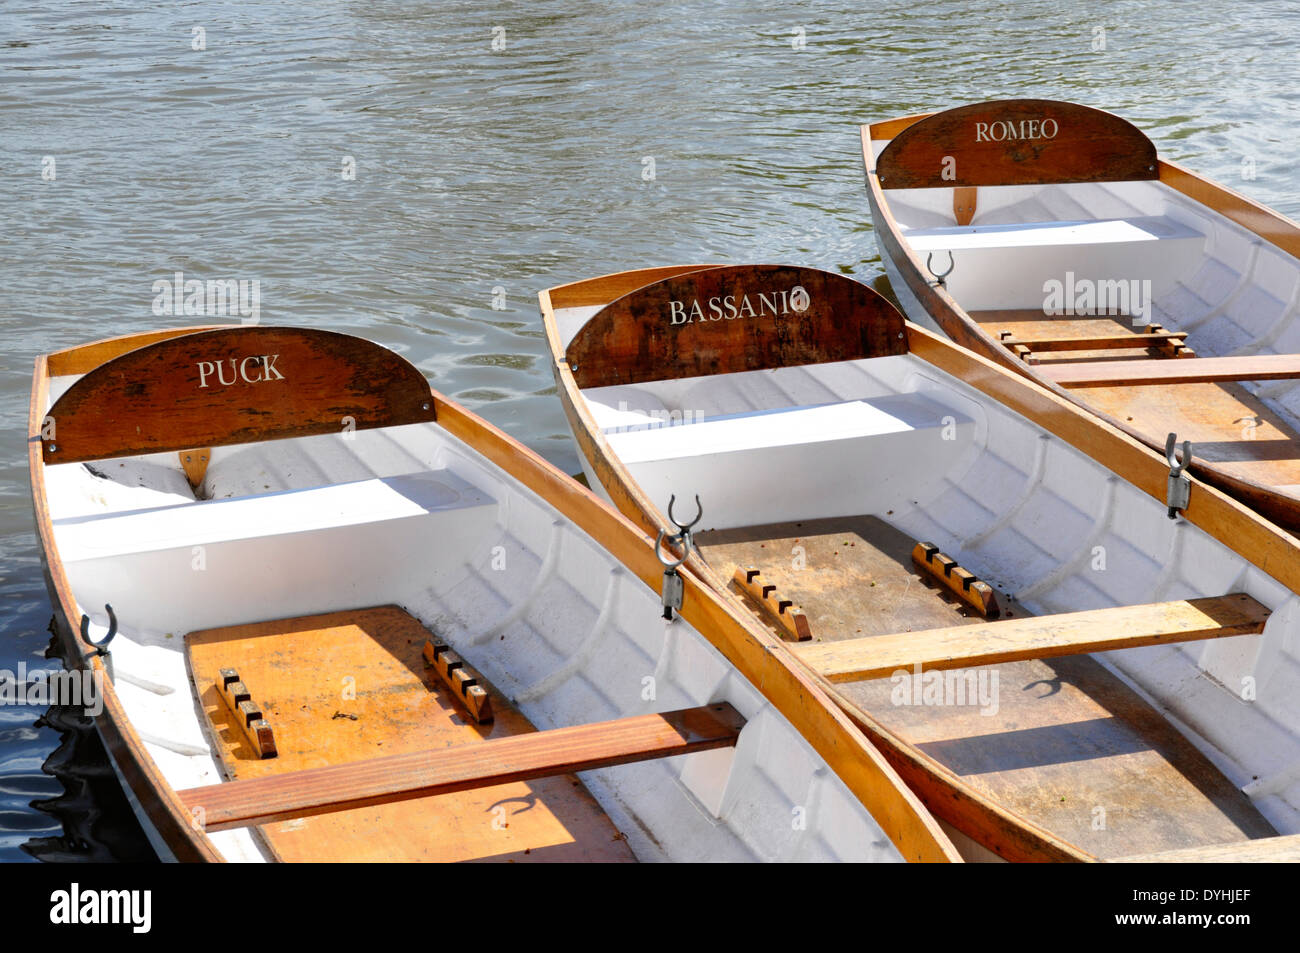 Stratford sur Avon - par la rivière - location de bateaux à rames - chaque bateau nommé d'après un personnage de Shakespeare - soleil Banque D'Images